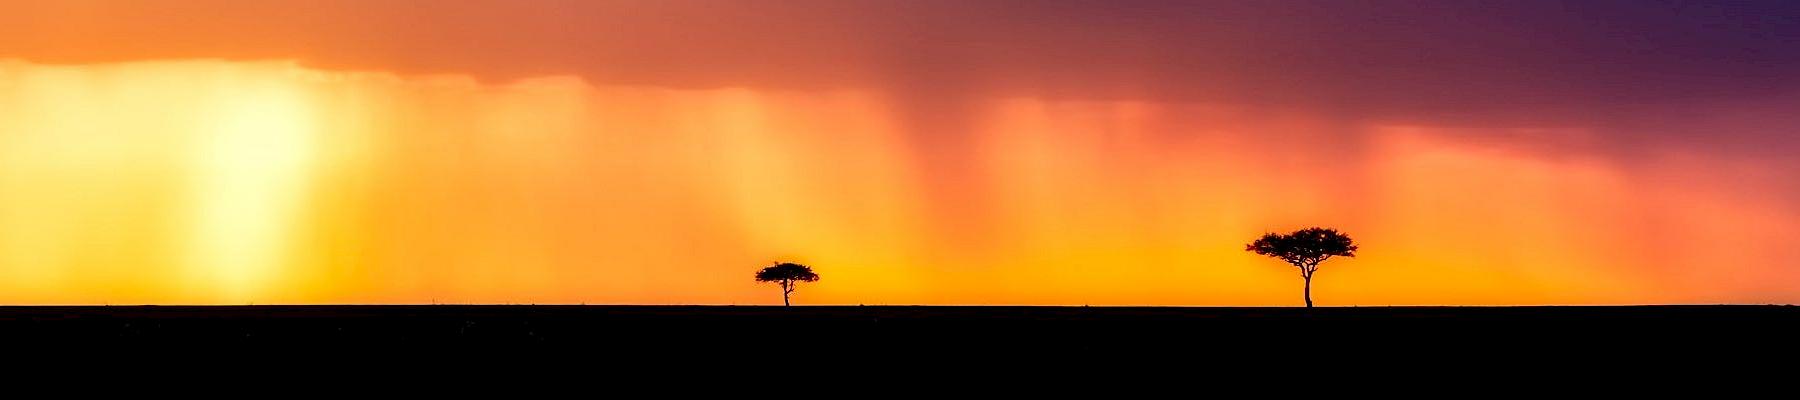 African landscape  © David Mark/Pixabay